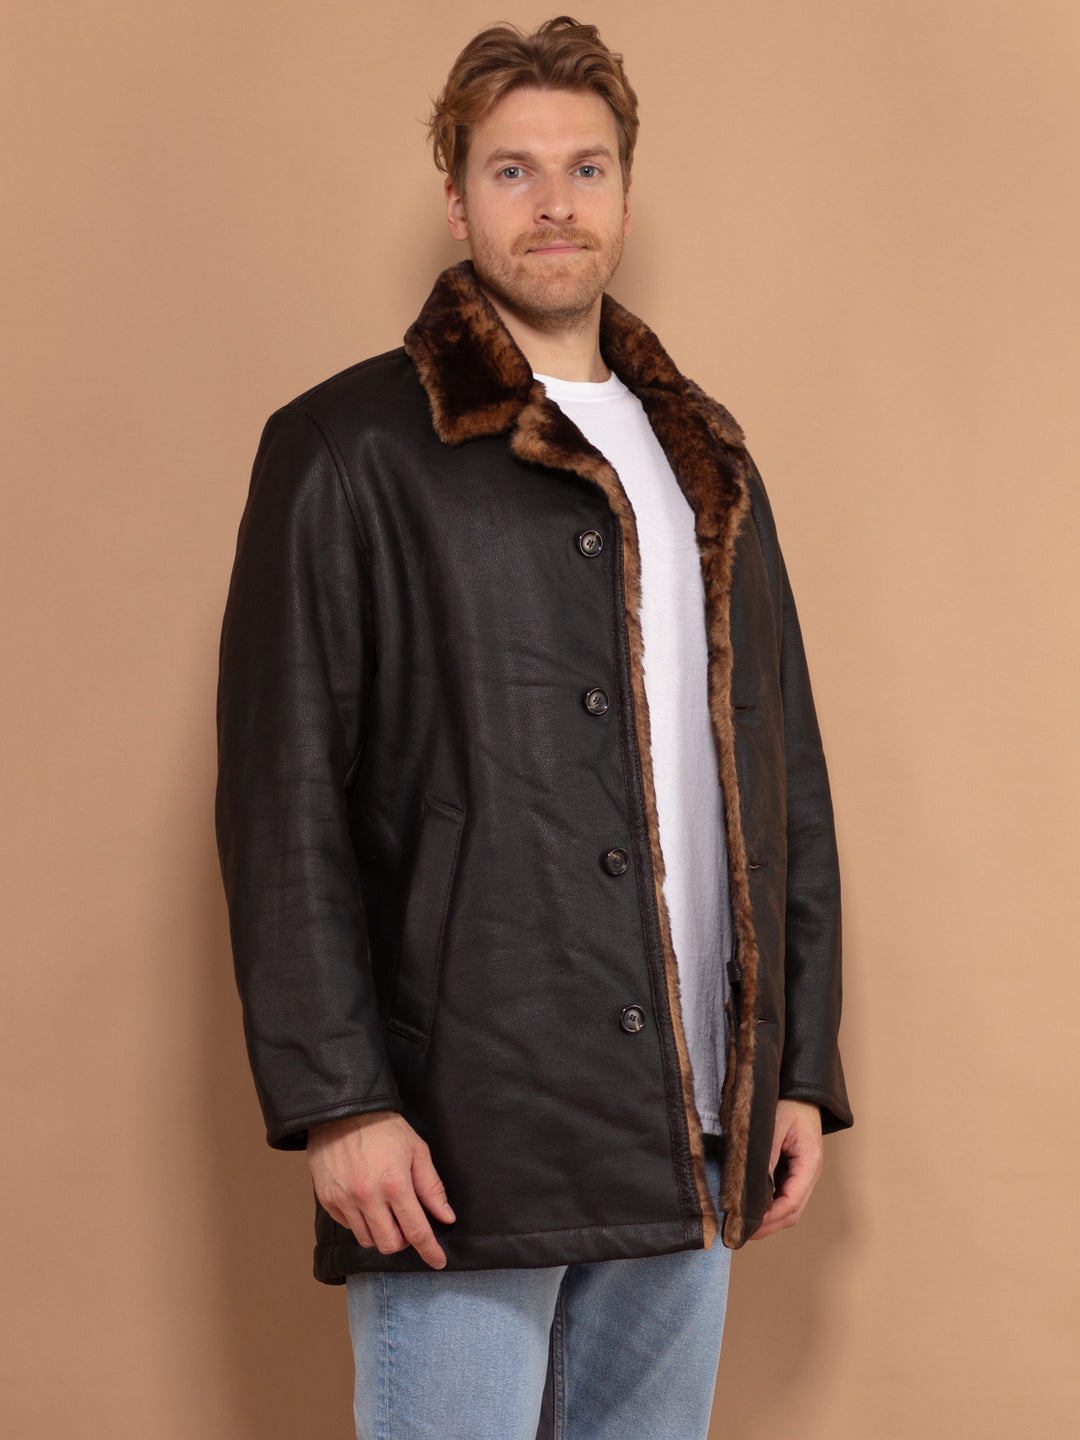 Vintage Faux Leather Shearling Coat 00s, Size Large, Vintage Men Sheepskin Coat, Boho Style Warm Winter Coat, Black Suede Coat, Gift for Men